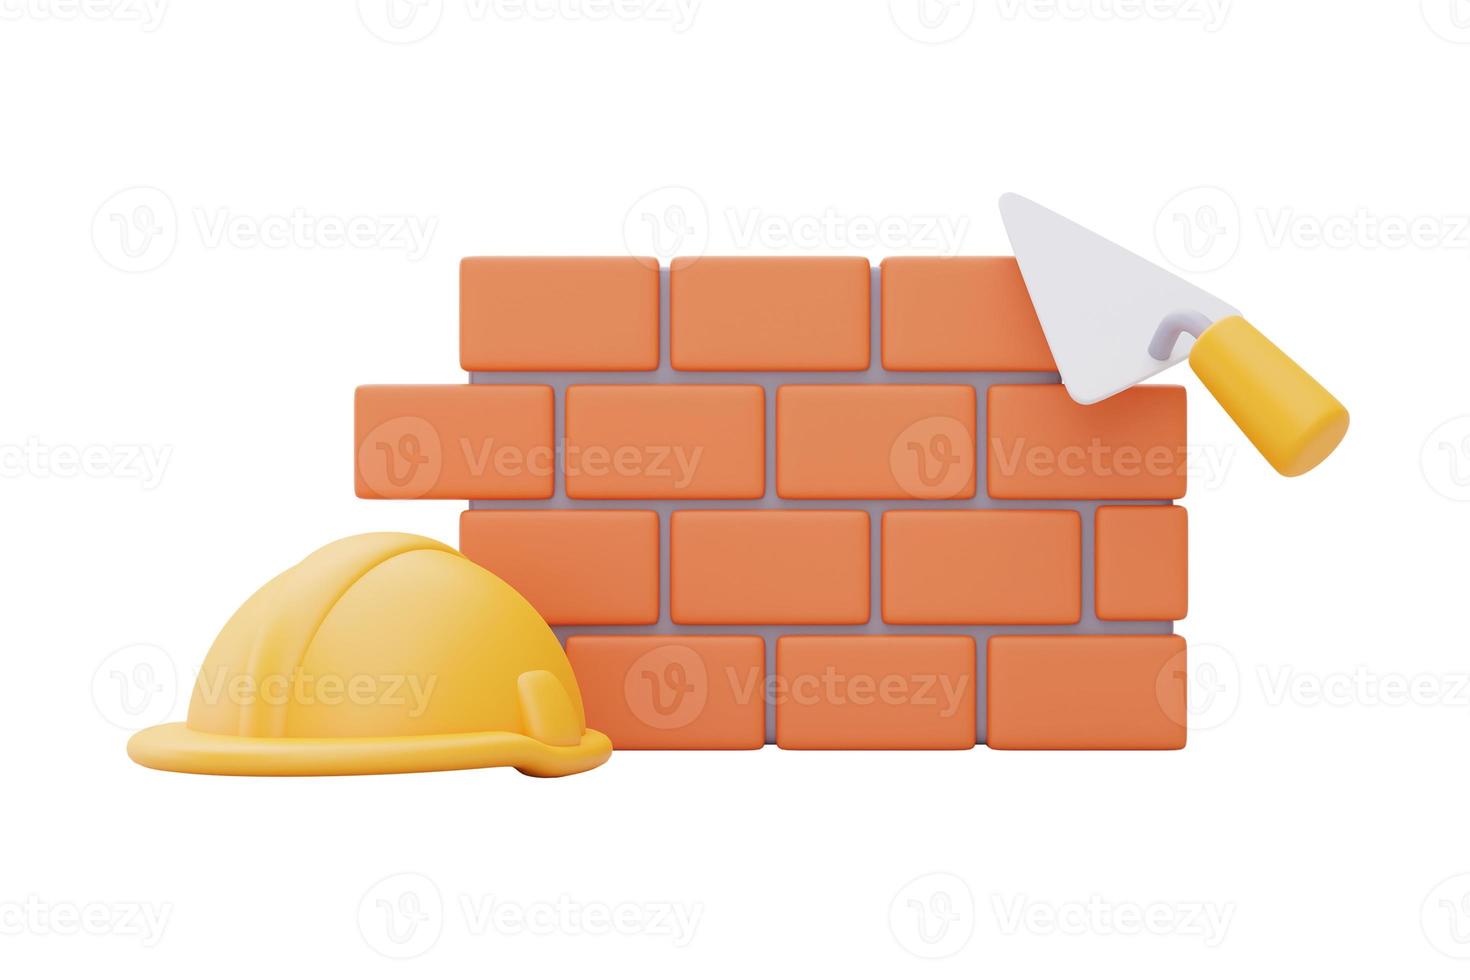 Backsteinmauer mit Bauwerkzeugen, Happy Labour Day.3D-Rendering foto